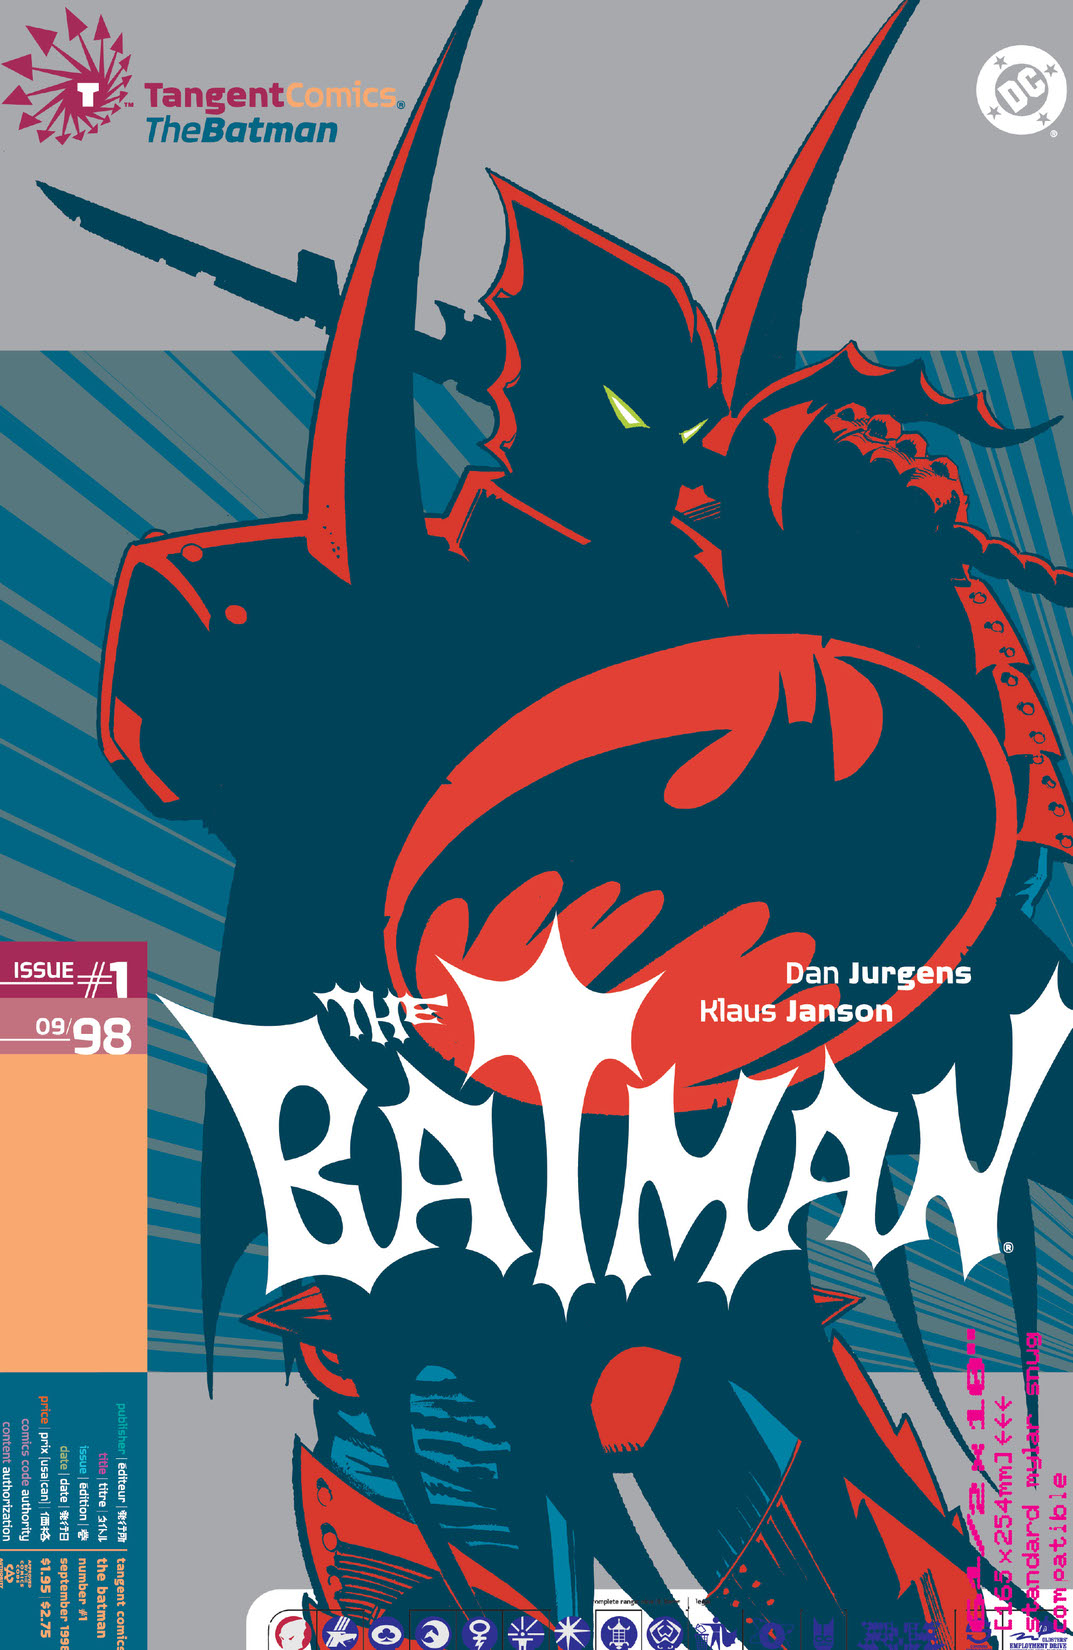 The Batman #1 preview images